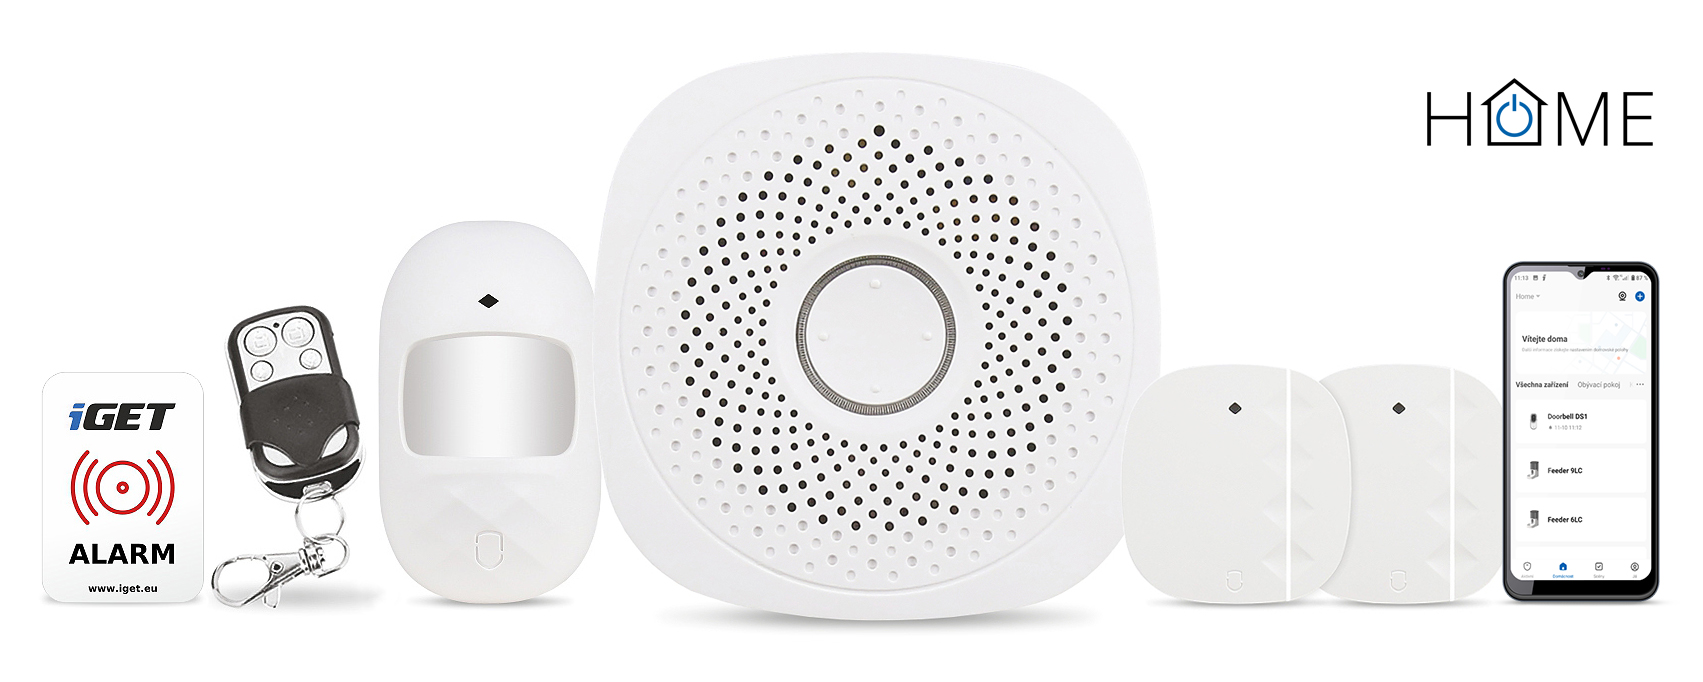 iGET HOME X1 - Inteligentní Wi-Fi alarm, v aplikaci i ovládání IP kamer a zásuvek, Android, iOS 75020107